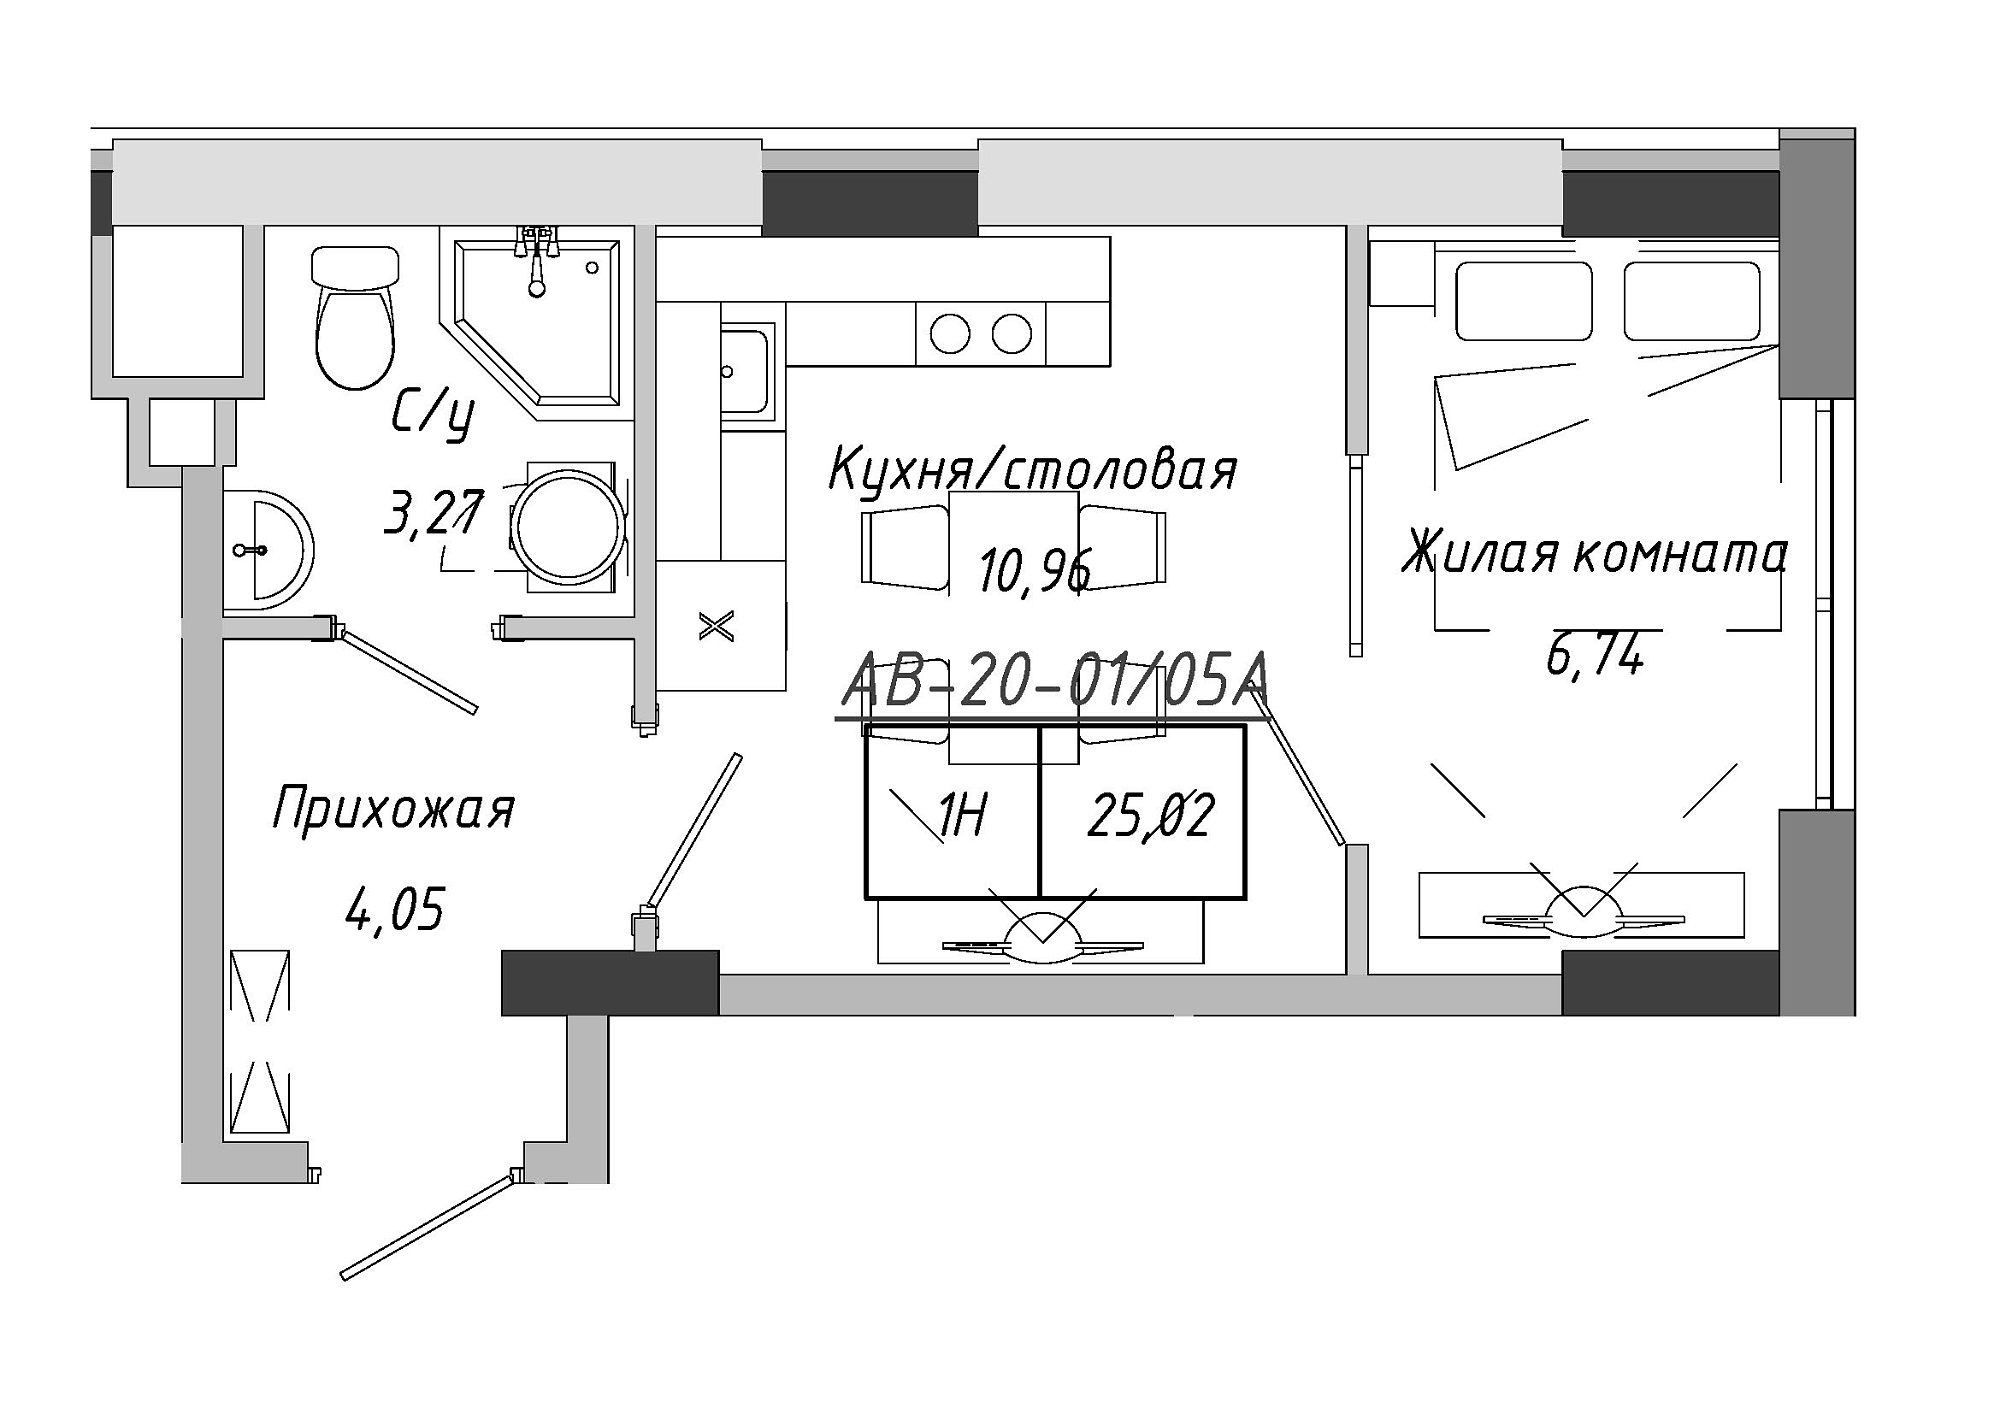 Планировка 1-к квартира площей 25.02м2, AB-20-01/0005а.